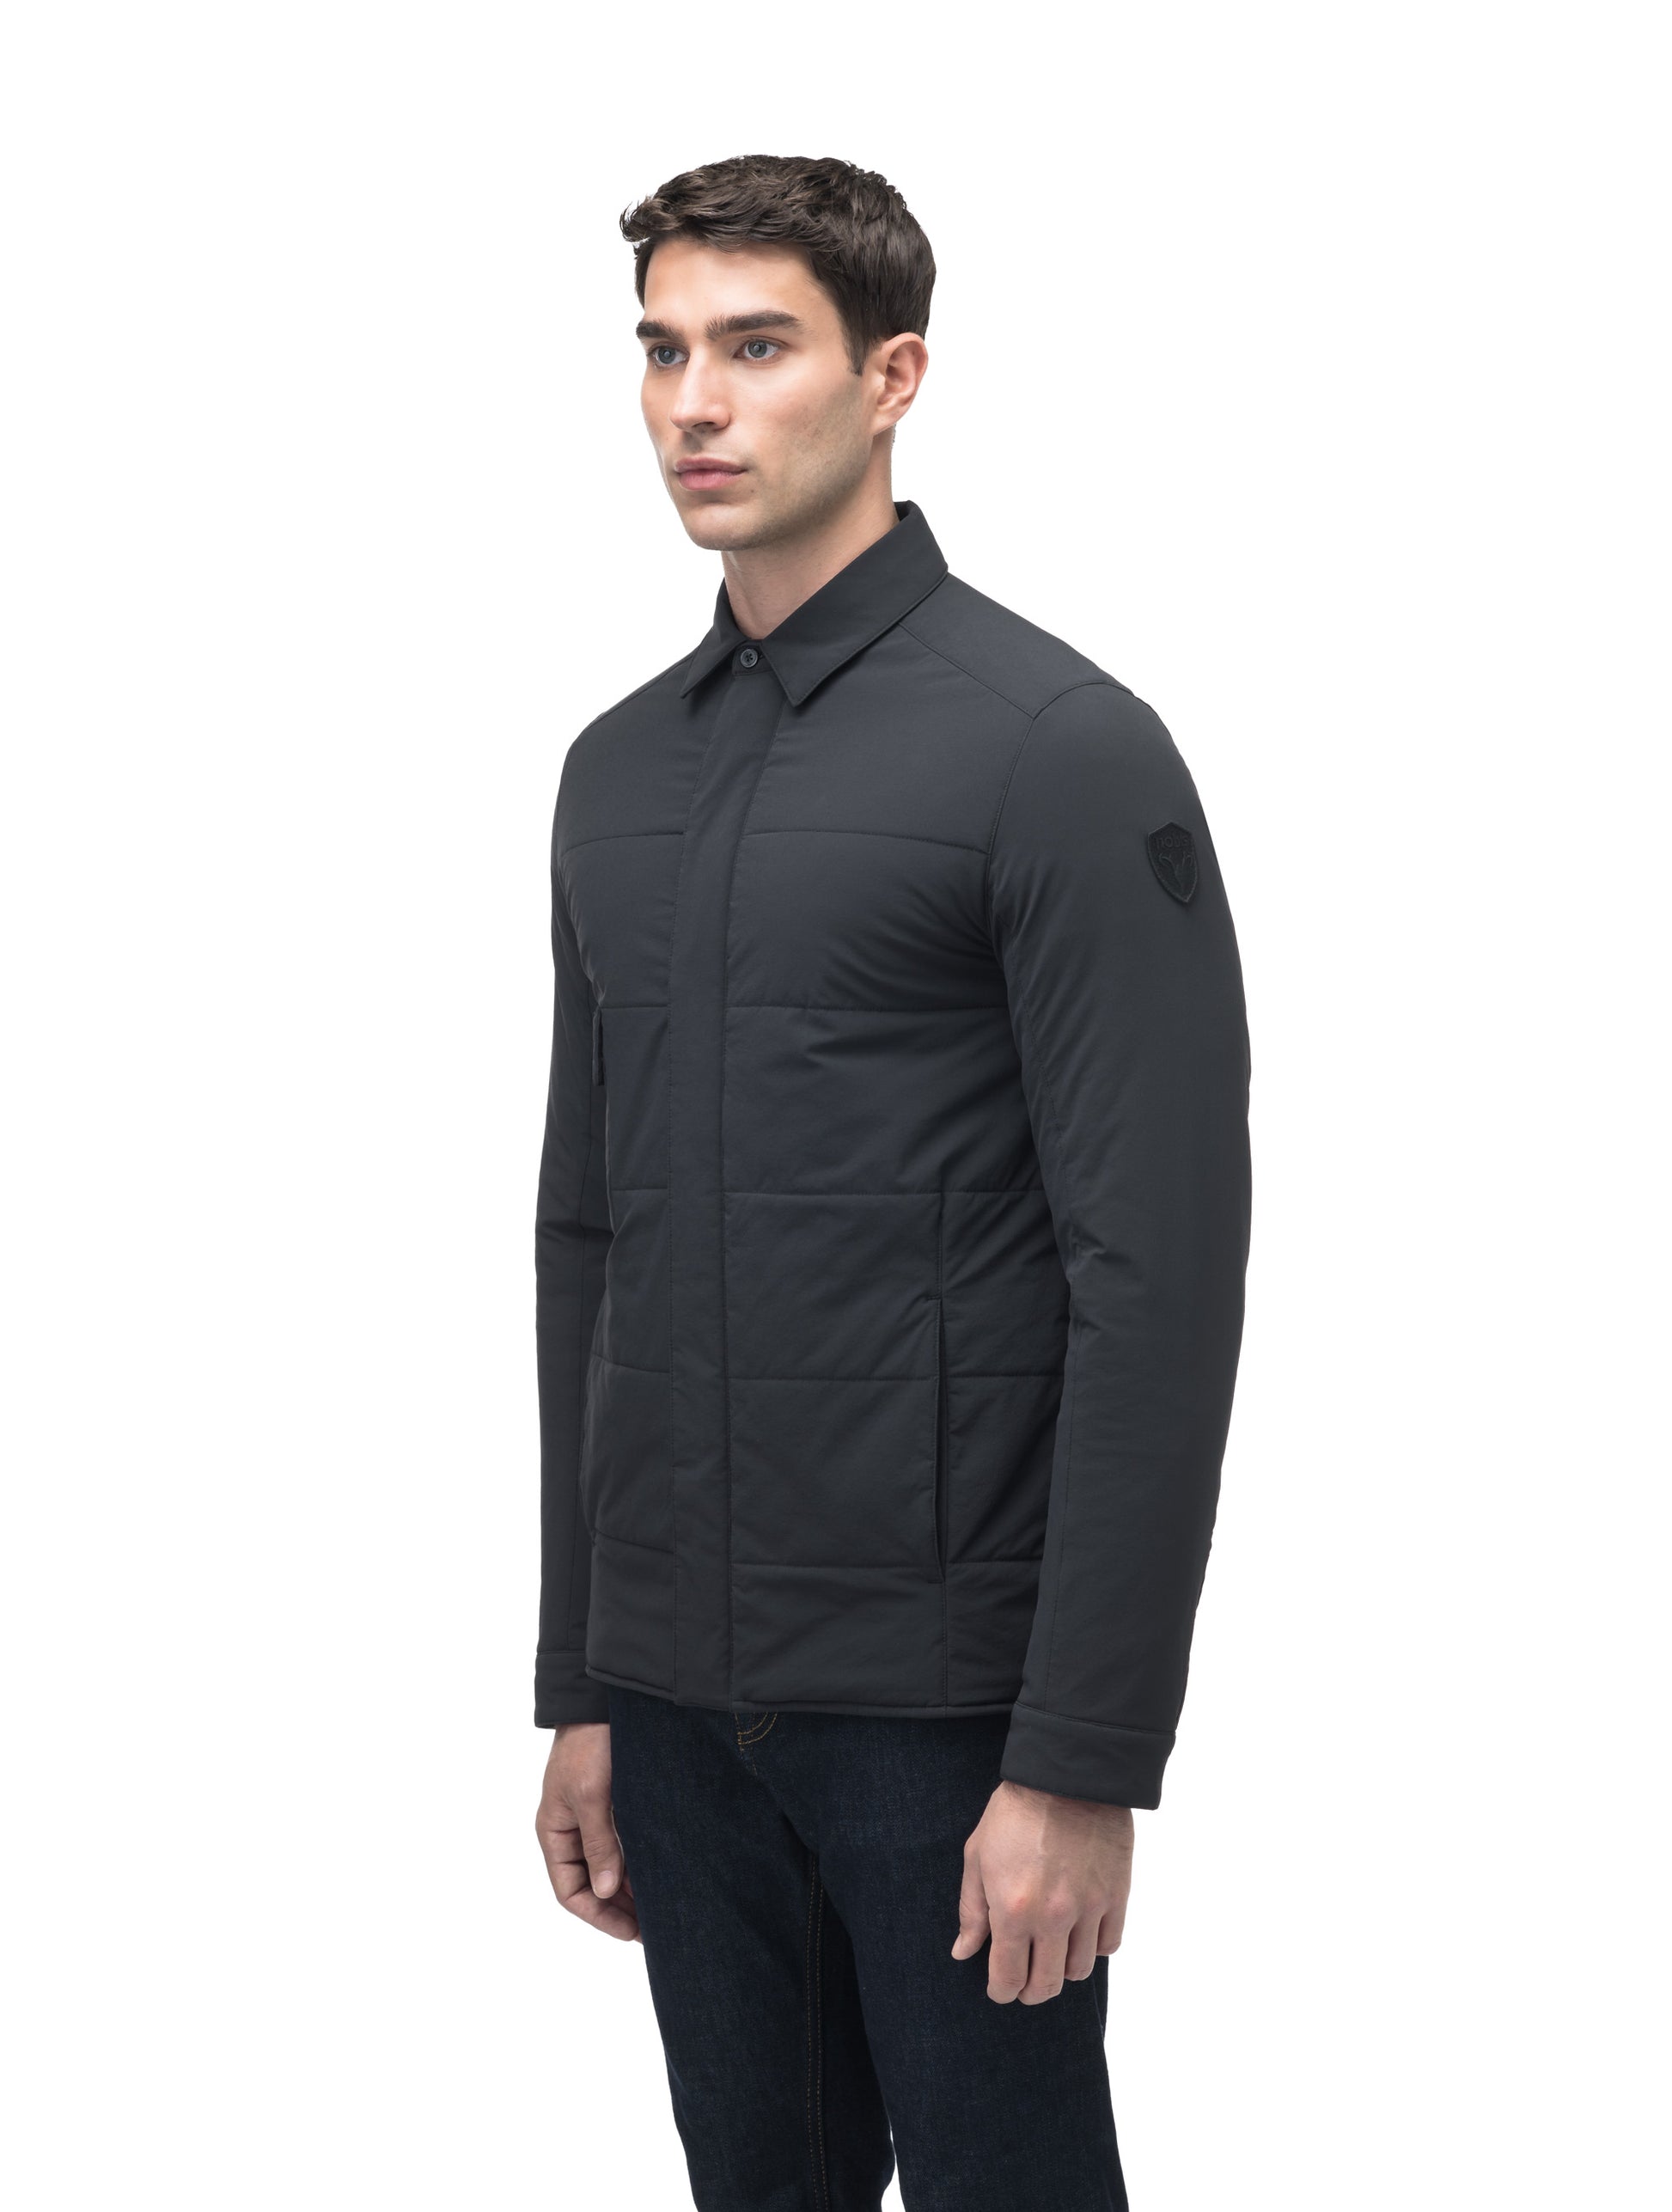 Men's down filled hip length shirt jacket in Black